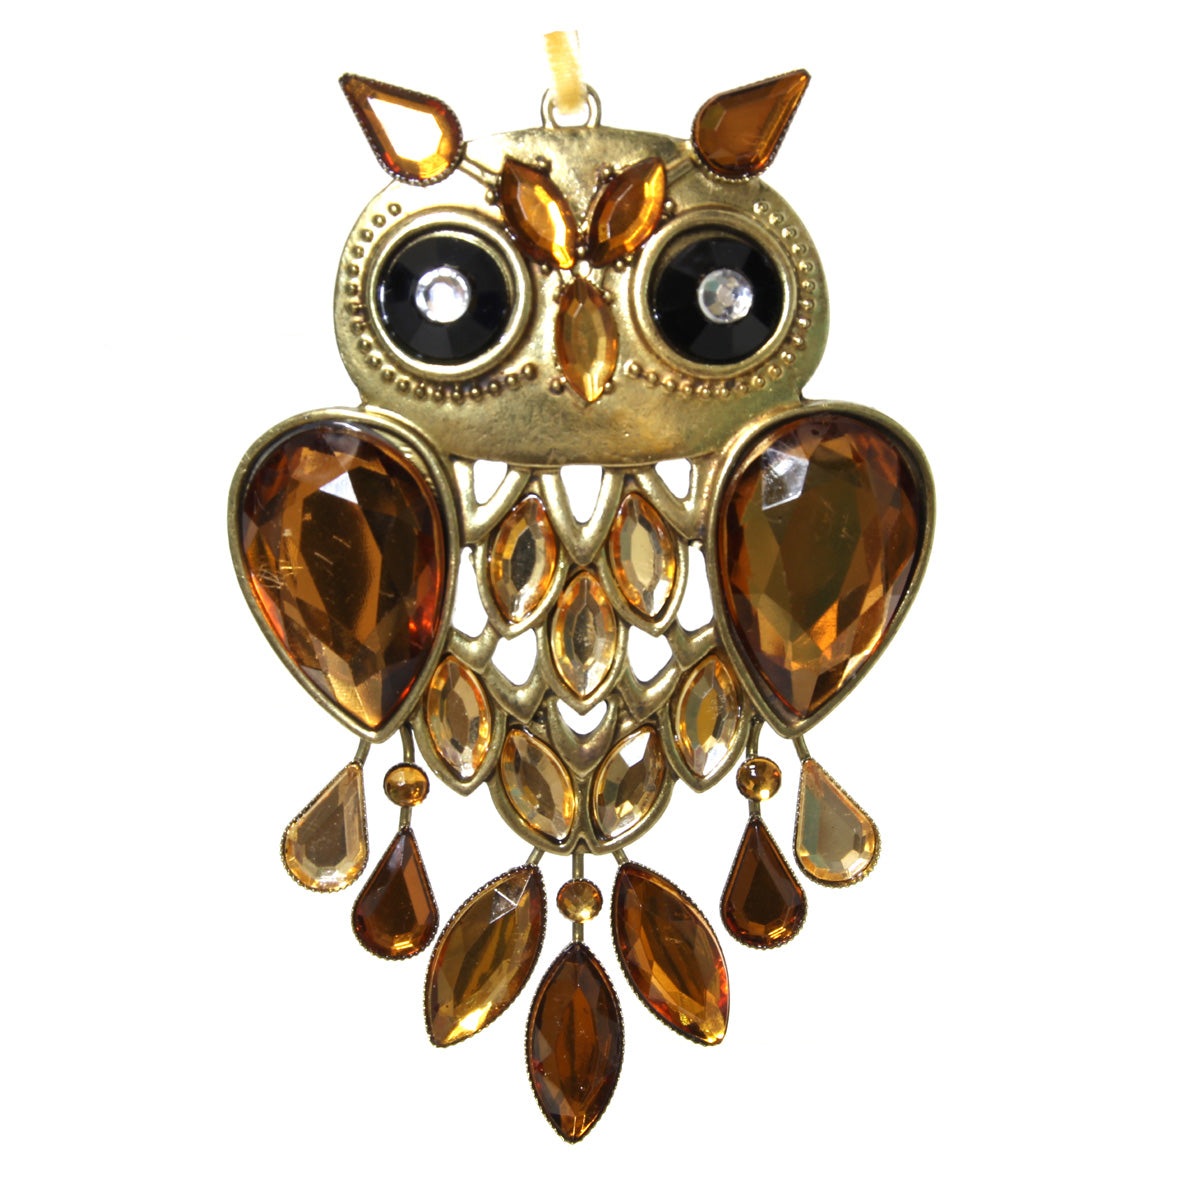 Acrylic Owl Ornament